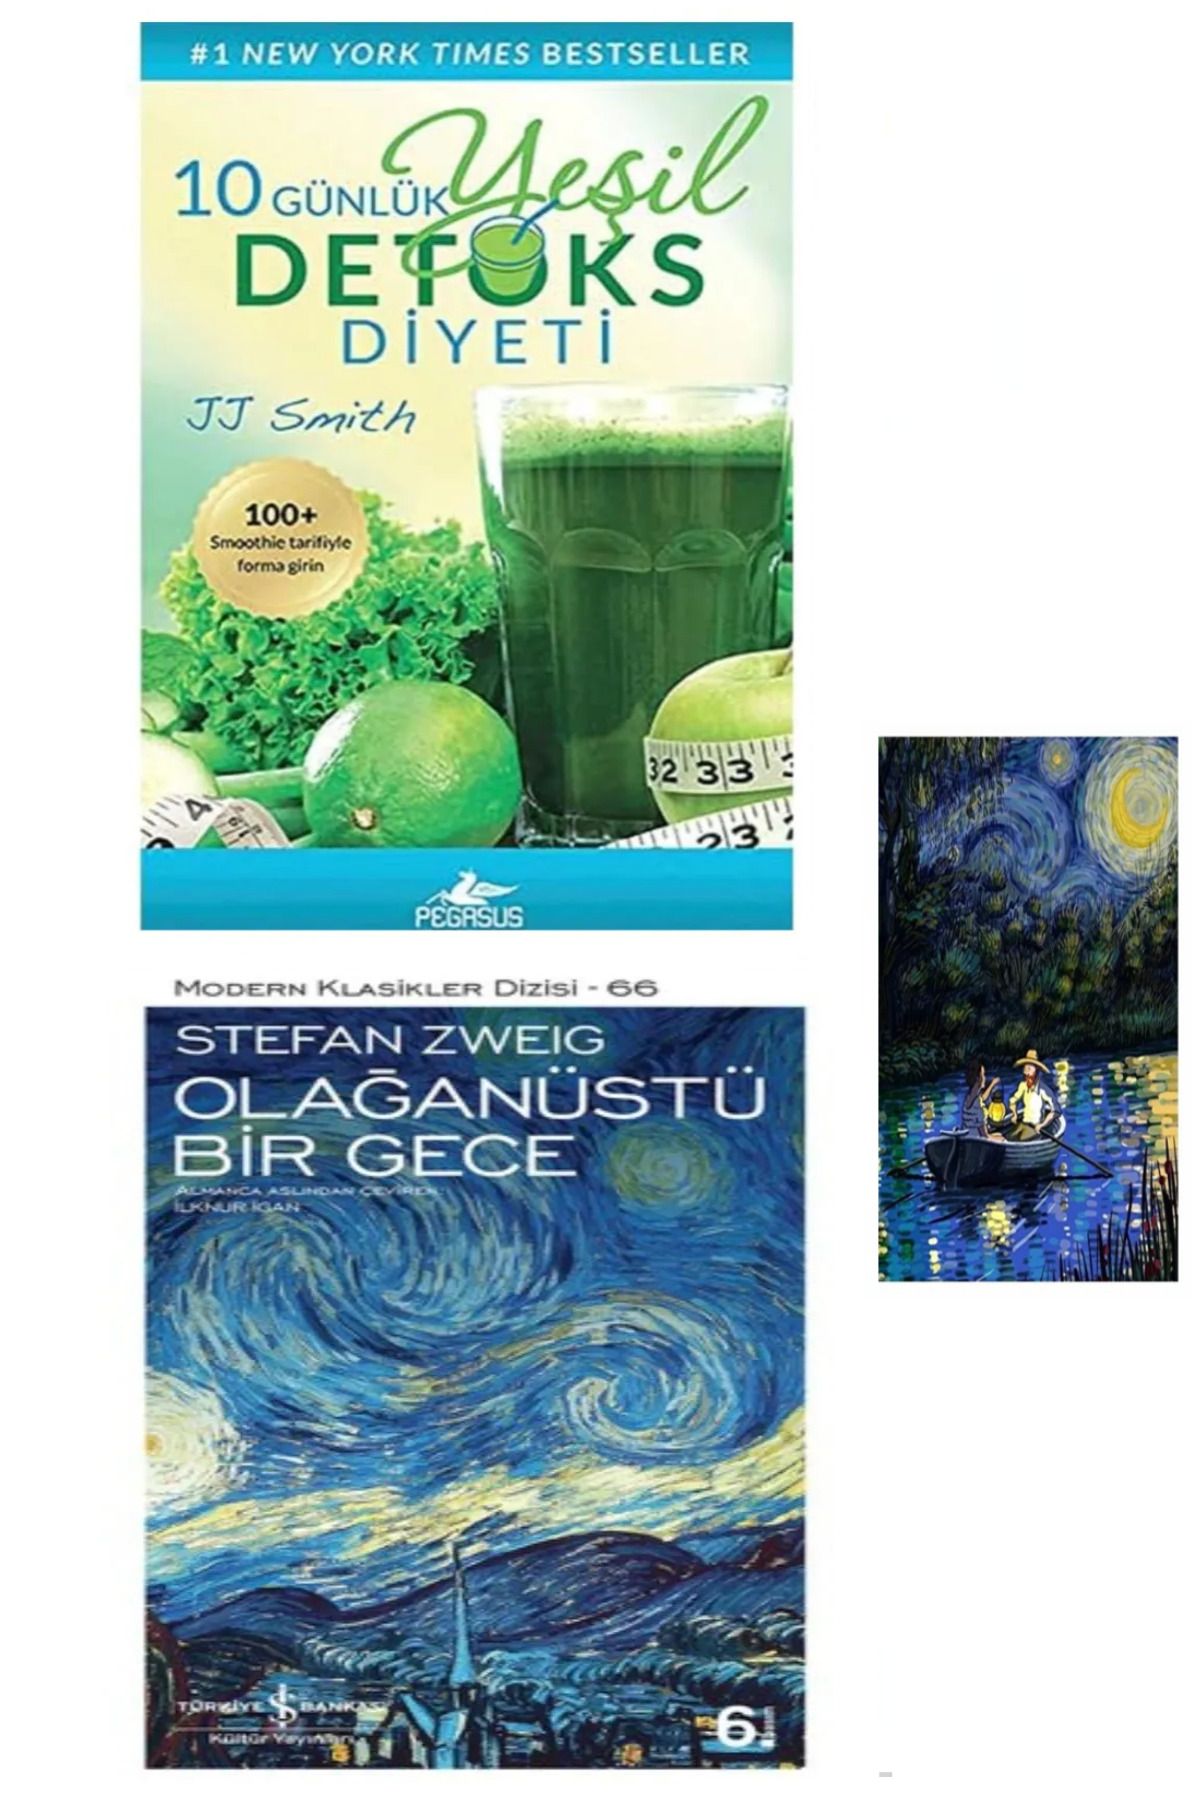 Türkiye İş Bankası Kültür Yayınları 10 Günlük Yeşil Detoks Diyeti (Koleksiyon Kitap) – Olağanüstü Bir Gece + Stiker